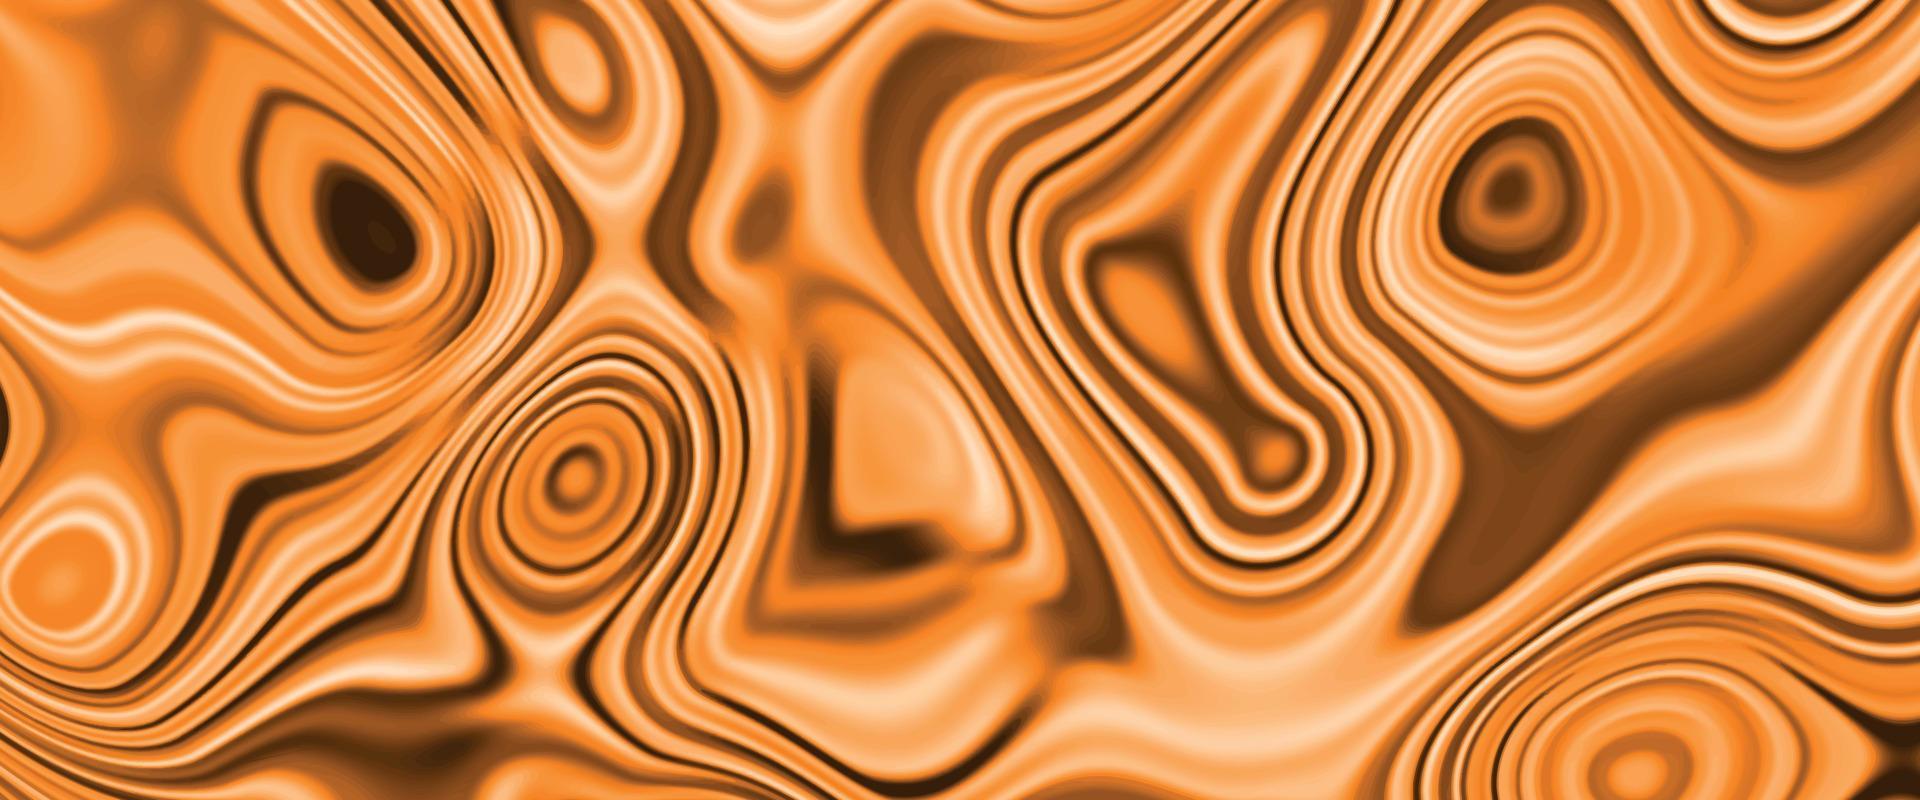 abstrakt vätska konst bakgrund ljus orange och gyllene färger. färgrik marmorering yta, vibrerande abstrakt måla design vätska vågor bakgrund textur. marmor vägg och golv dekorativ plattor design. vektor